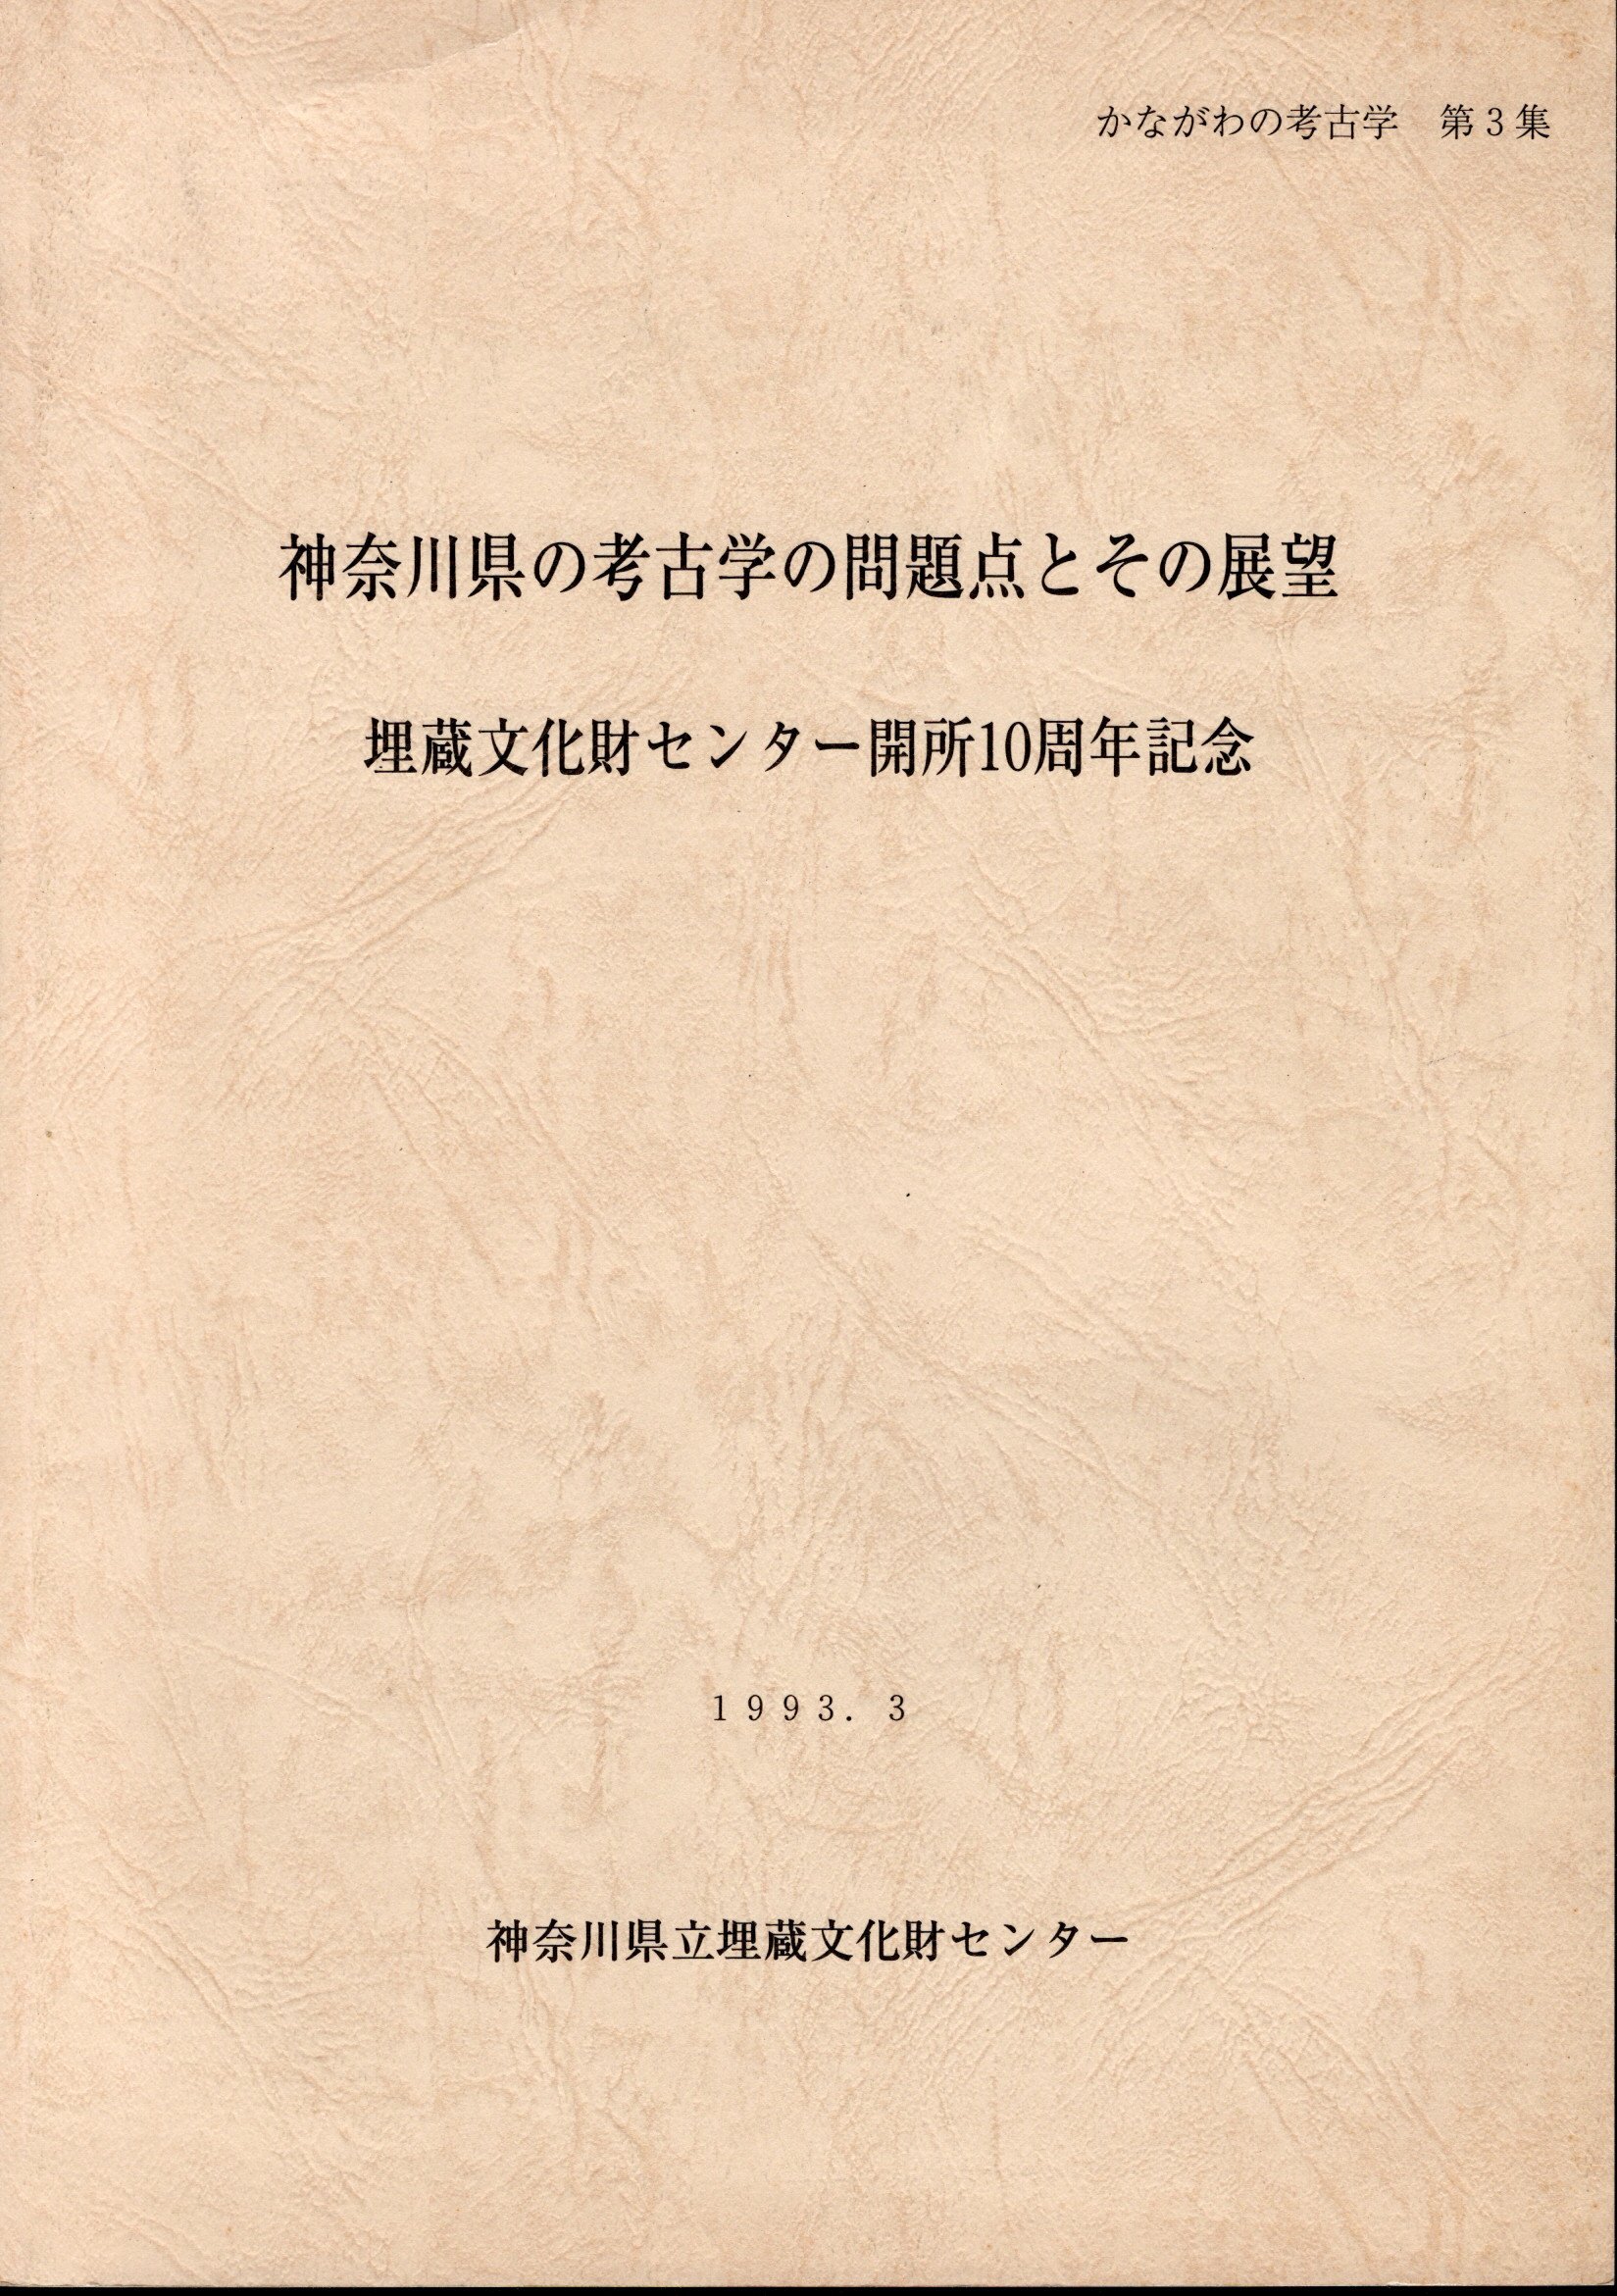 かながわの考古学 第3集 神奈川県の考古学の問題点とその展望 埋蔵文化